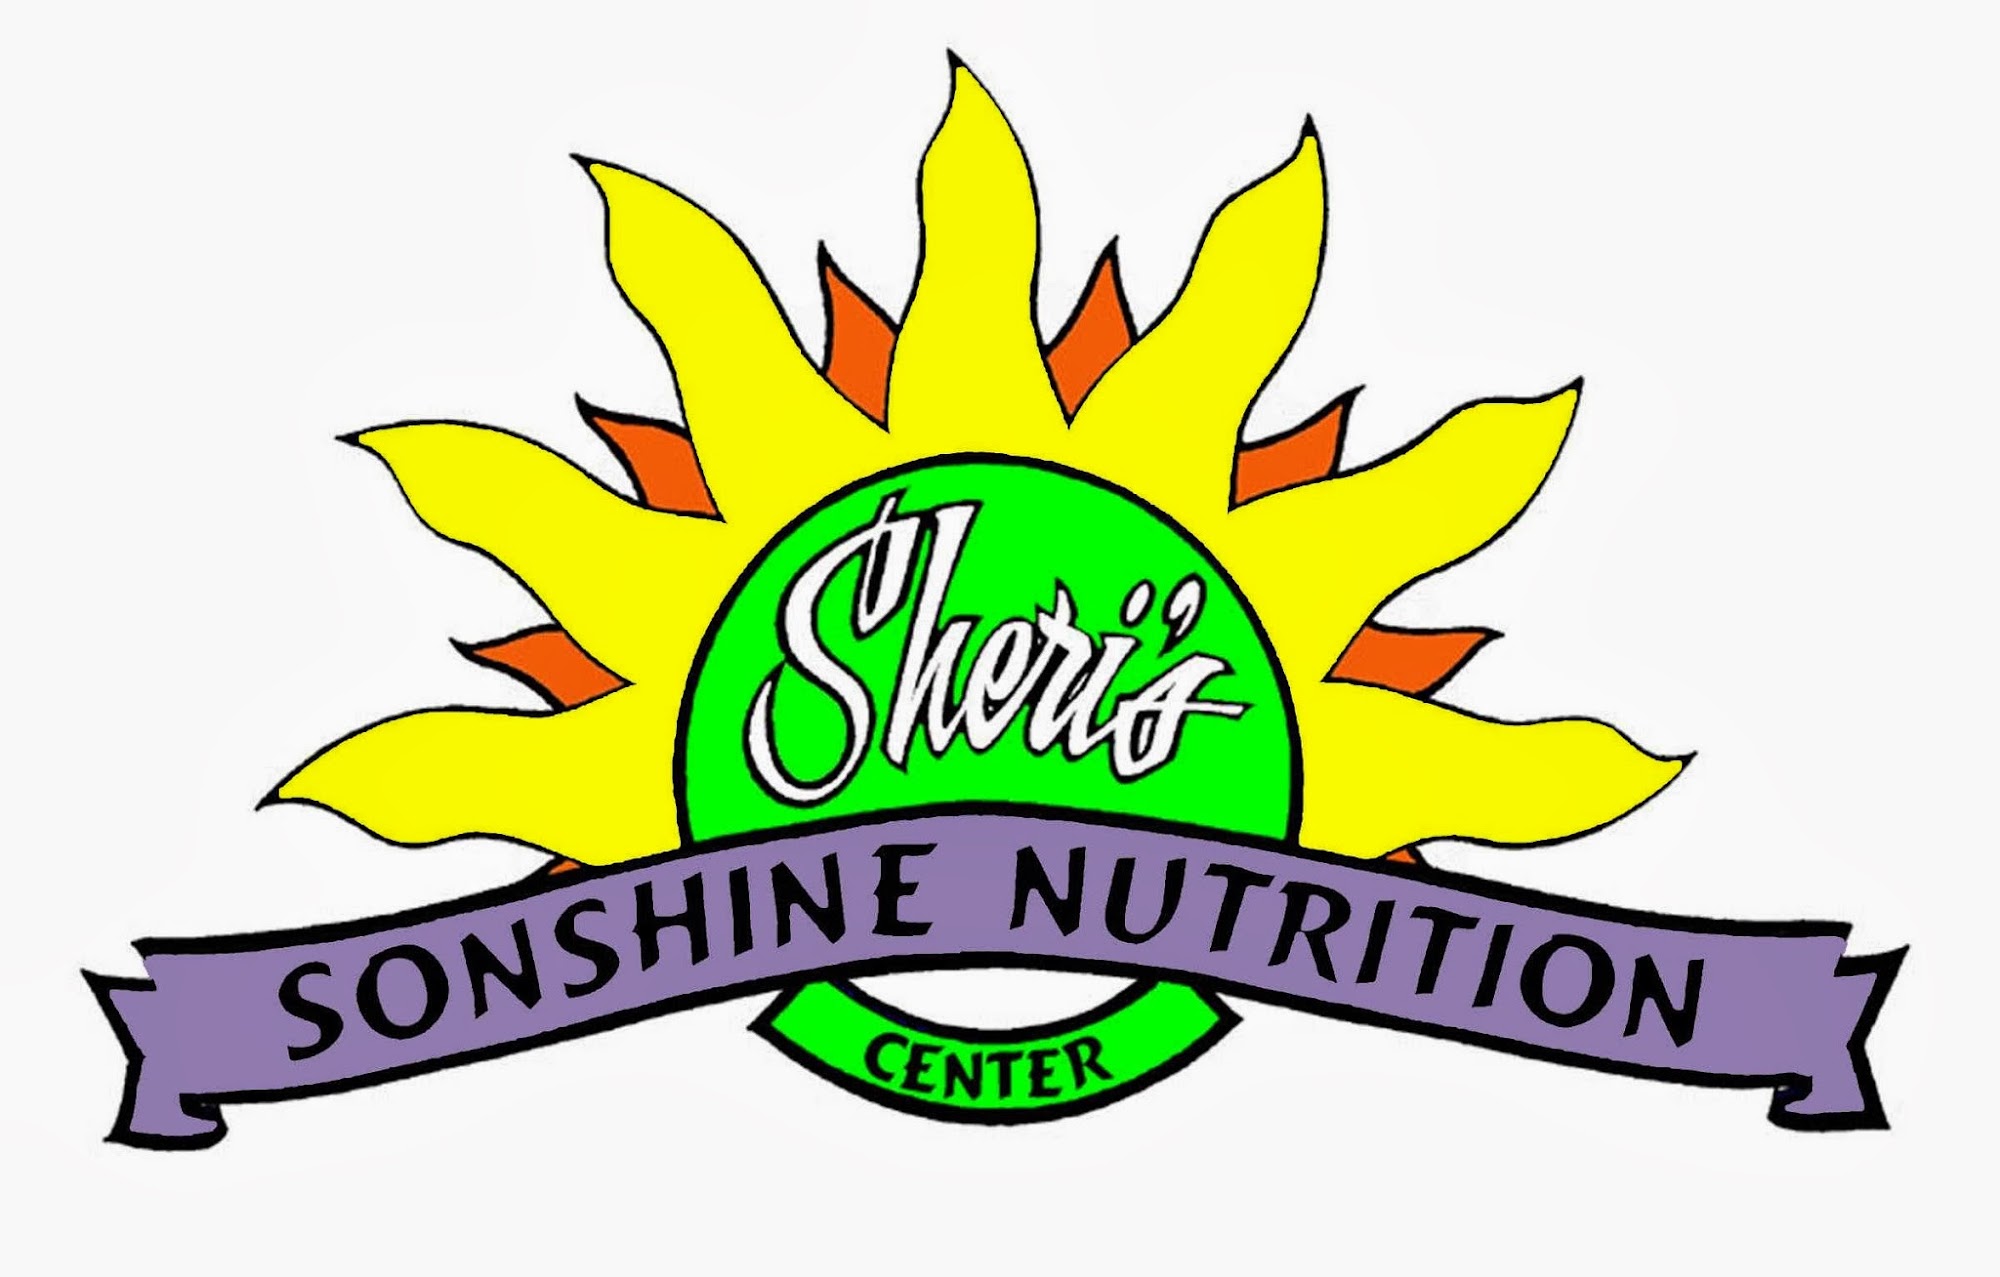 Sheri's Sonshine Nutrition Center